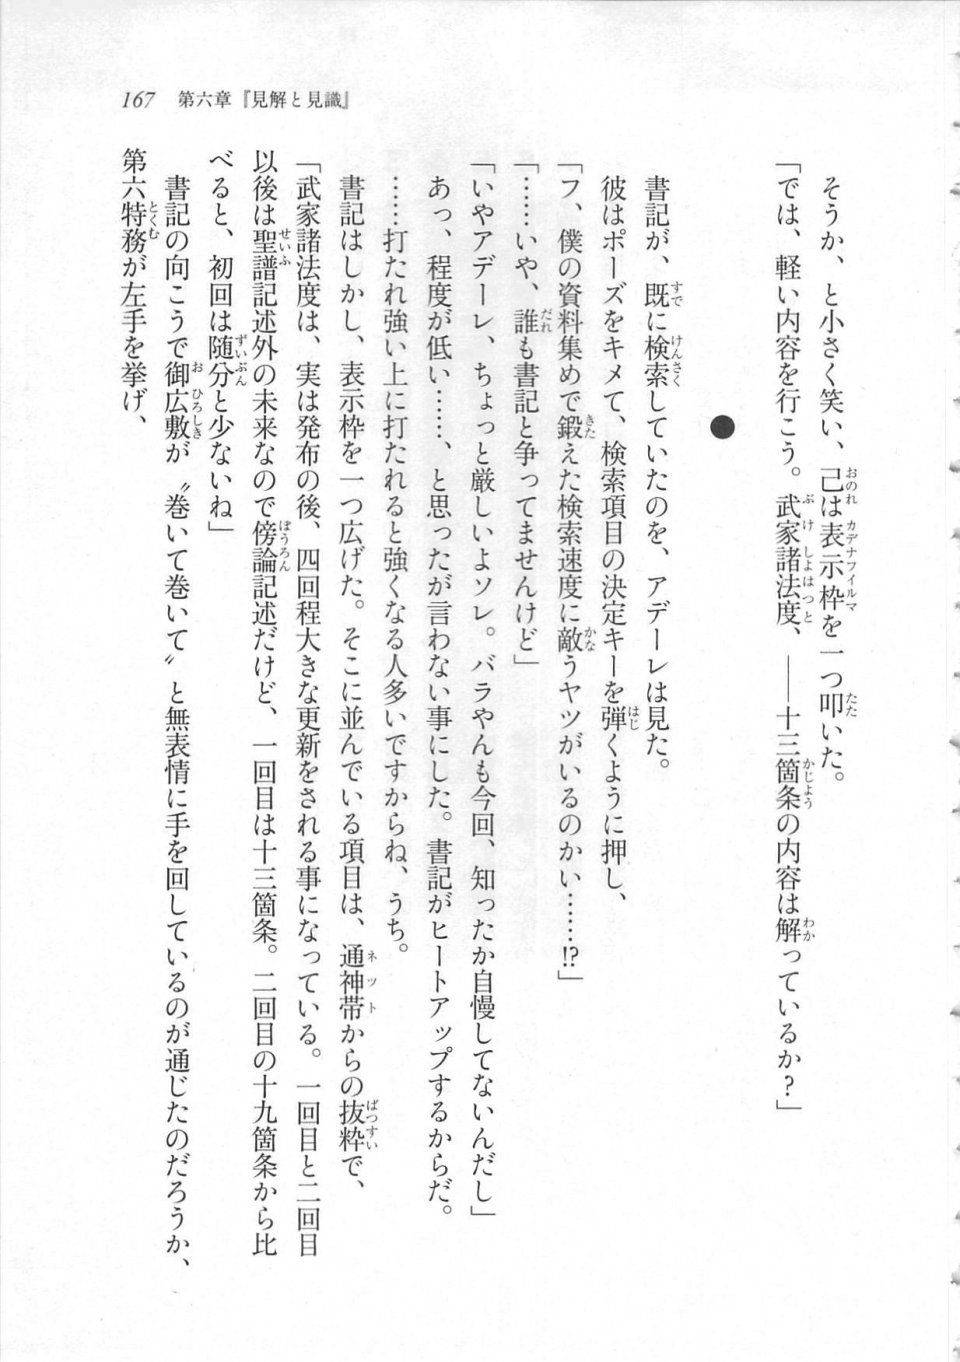 Kyoukai Senjou no Horizon LN Sidestory Vol 3 - Photo #171